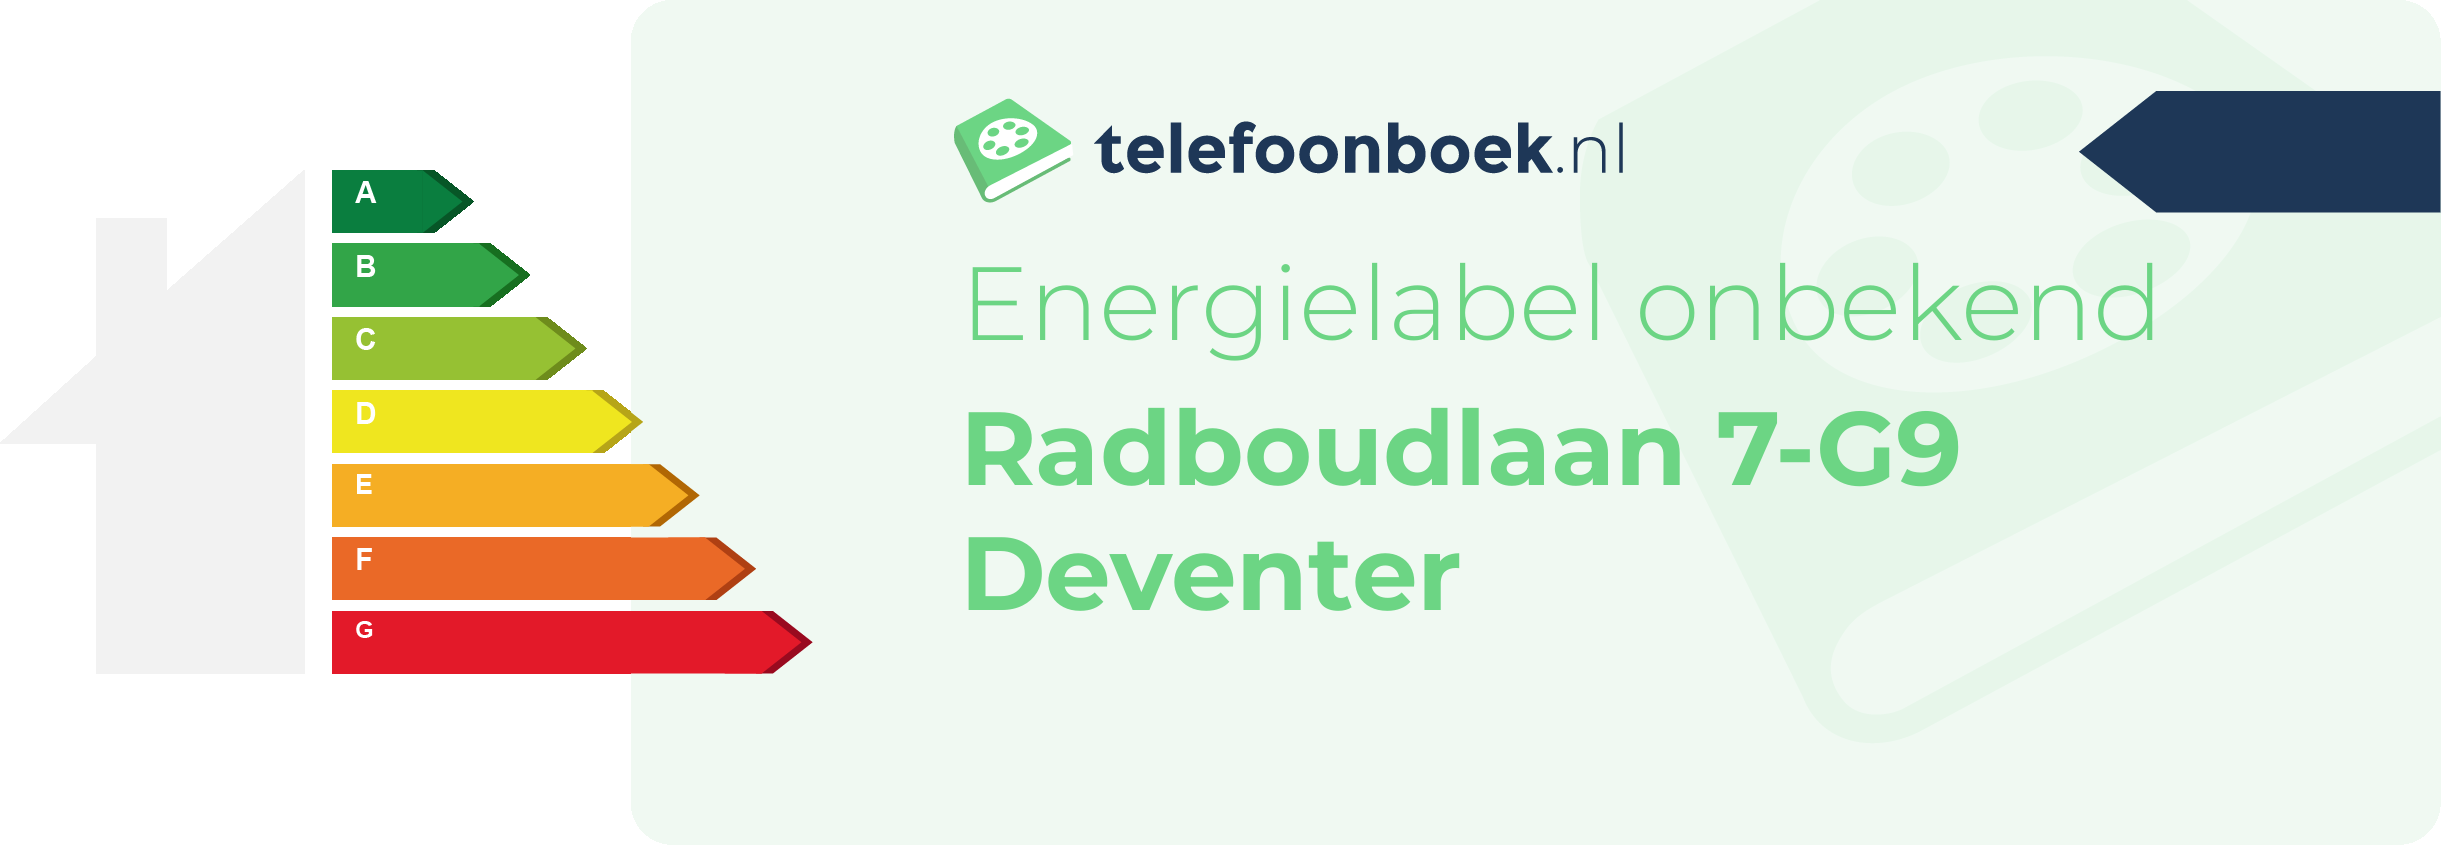 Energielabel Radboudlaan 7-G9 Deventer